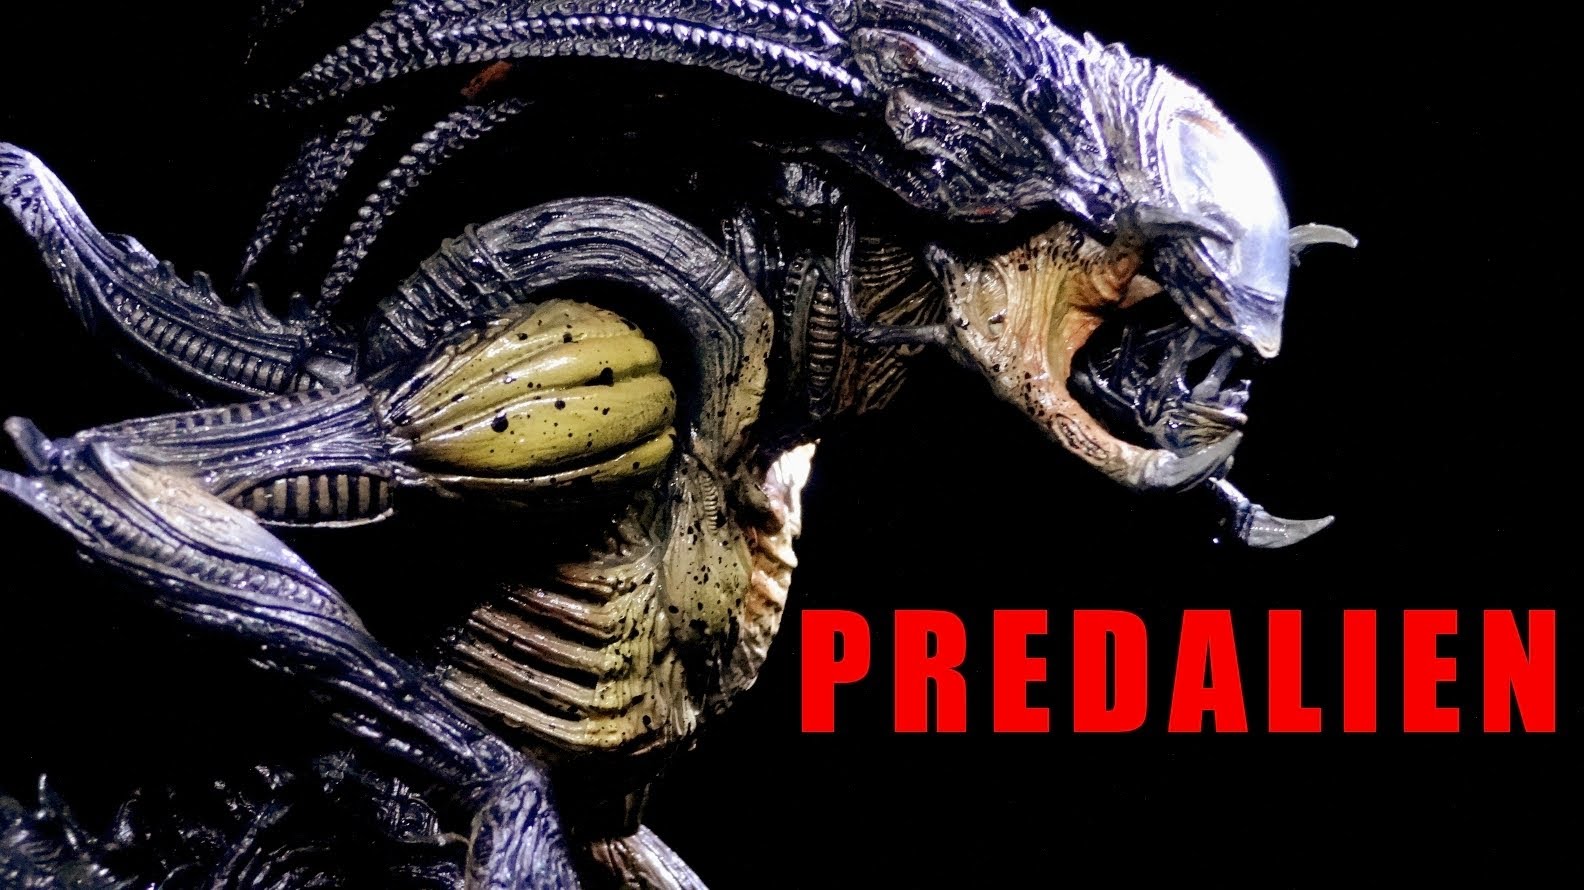 download alien versus predator requiem